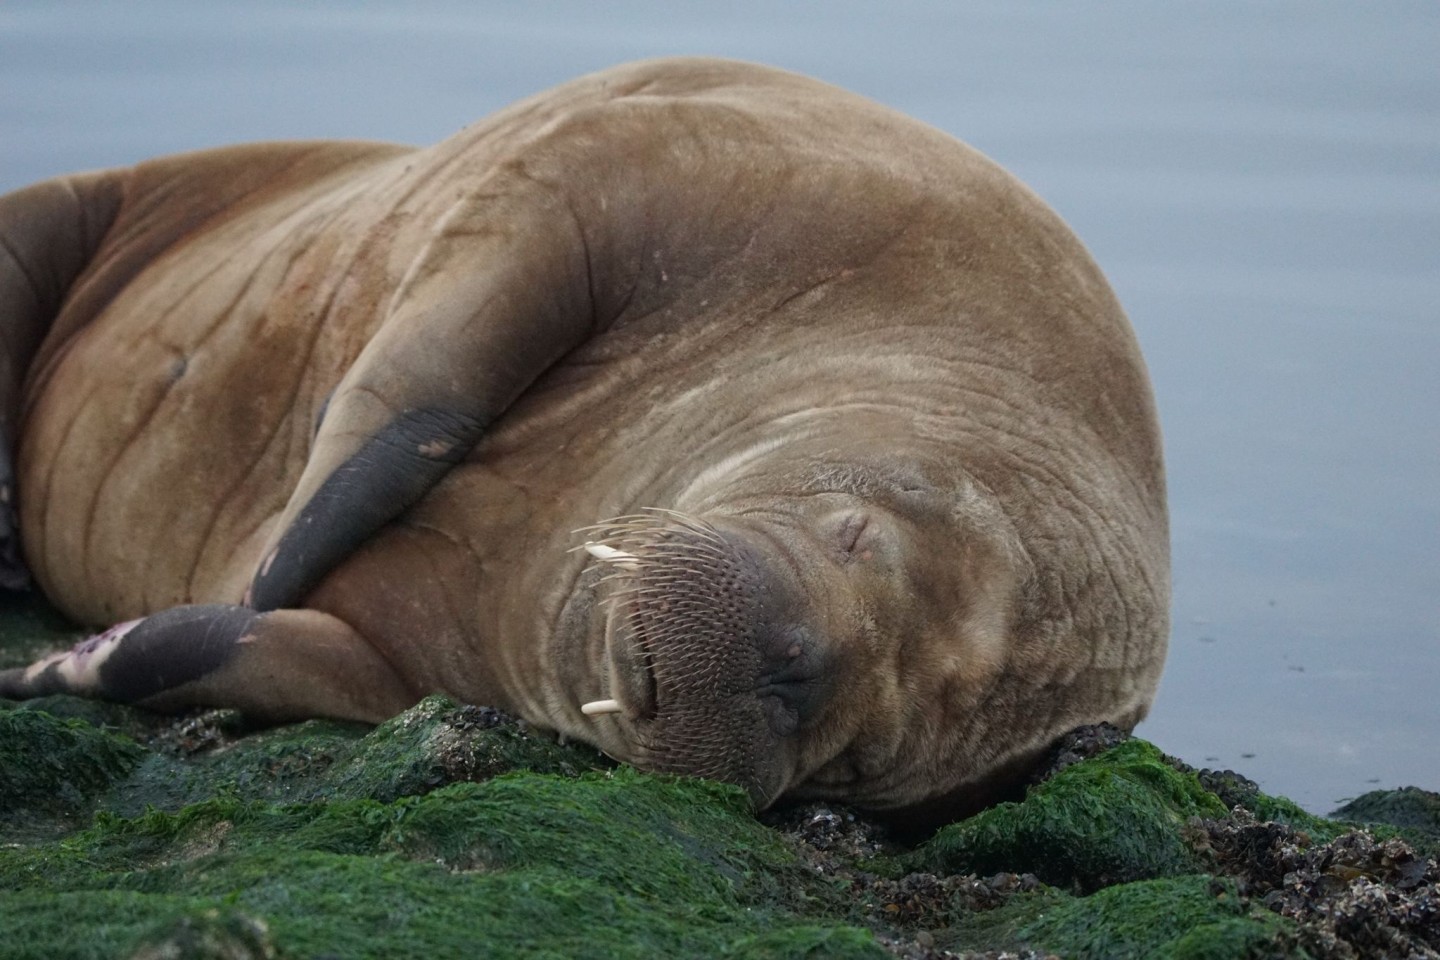 Auf der Nordsee-Insel Baltrum liegt ein Walross. Das Tier wurde auf einer breiten Buhne - einer Küstenschutzanlage - an der Westspitze der Insel gesichtet.